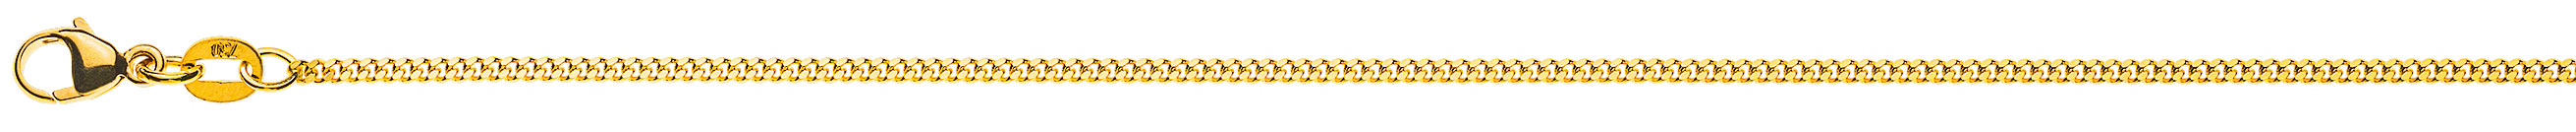 AURONOS Prestige Halskette Gelbgold 18K Panzerkette geschliffen 38cm 1.6mm